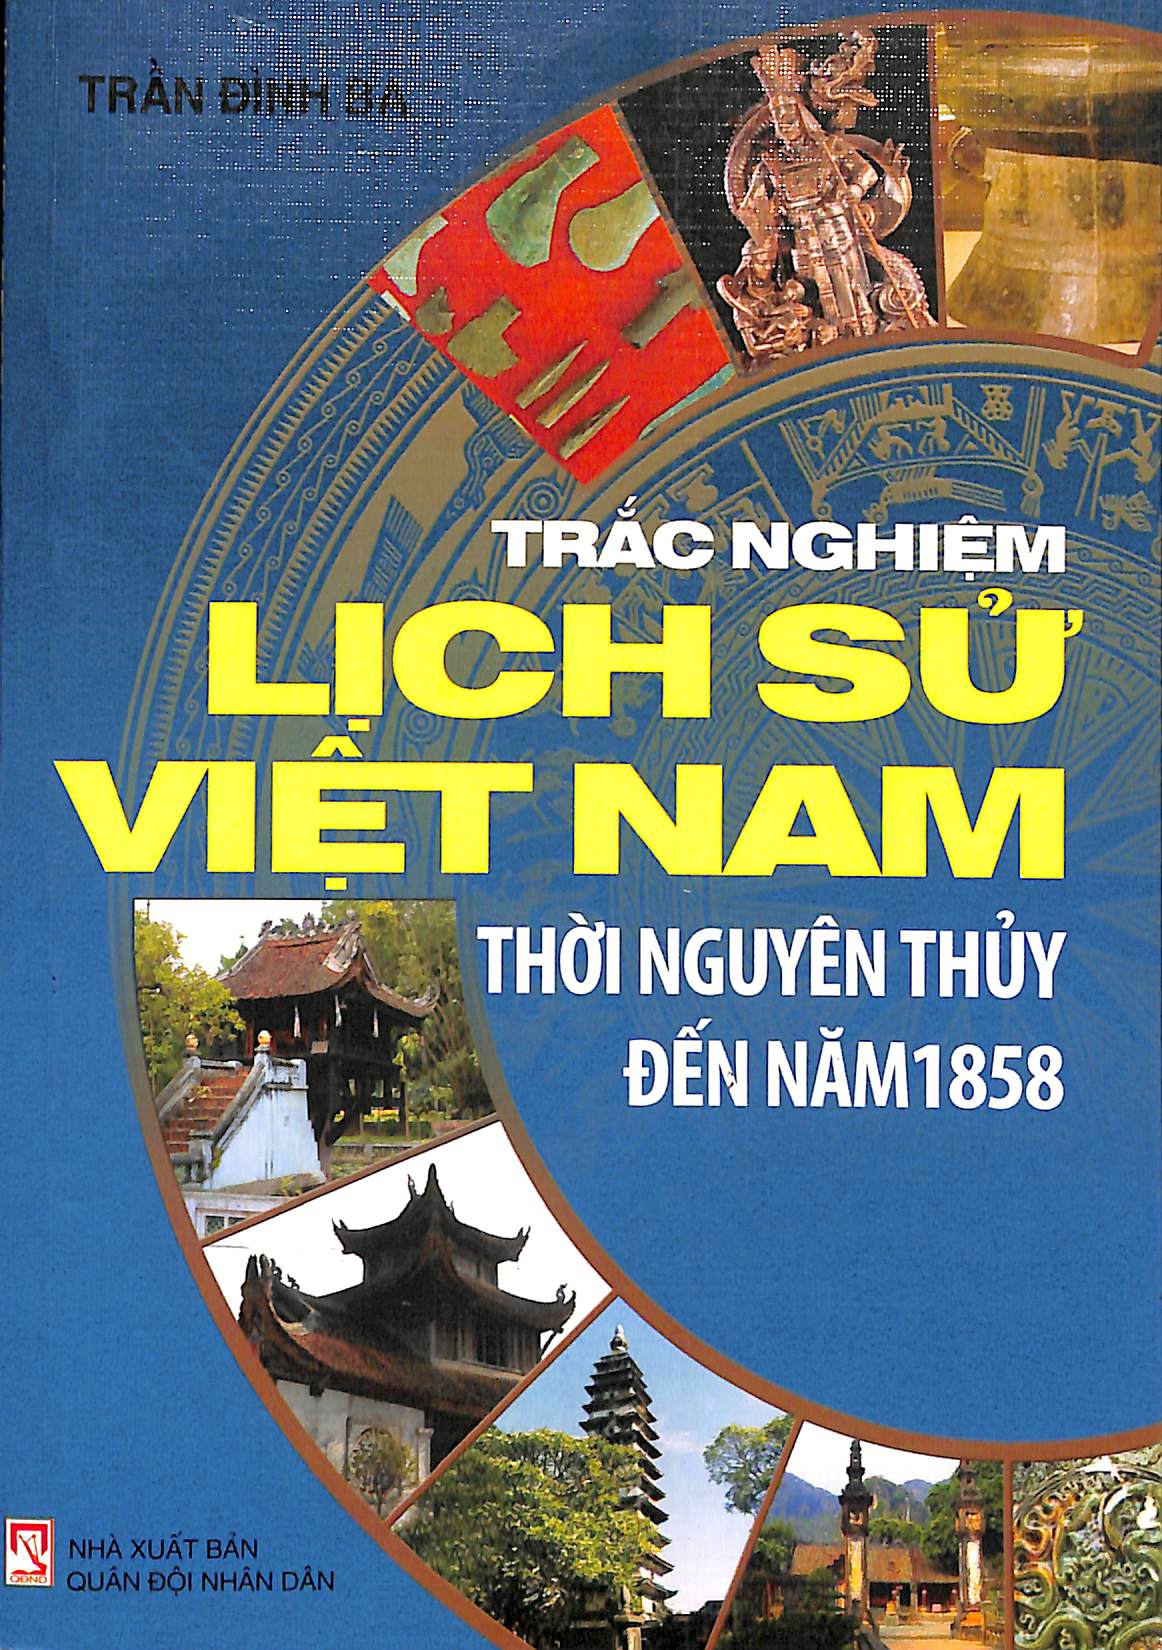 Trắc nghiệm lịch sử Việt Nam thời nguyên thủy đến năm 1858